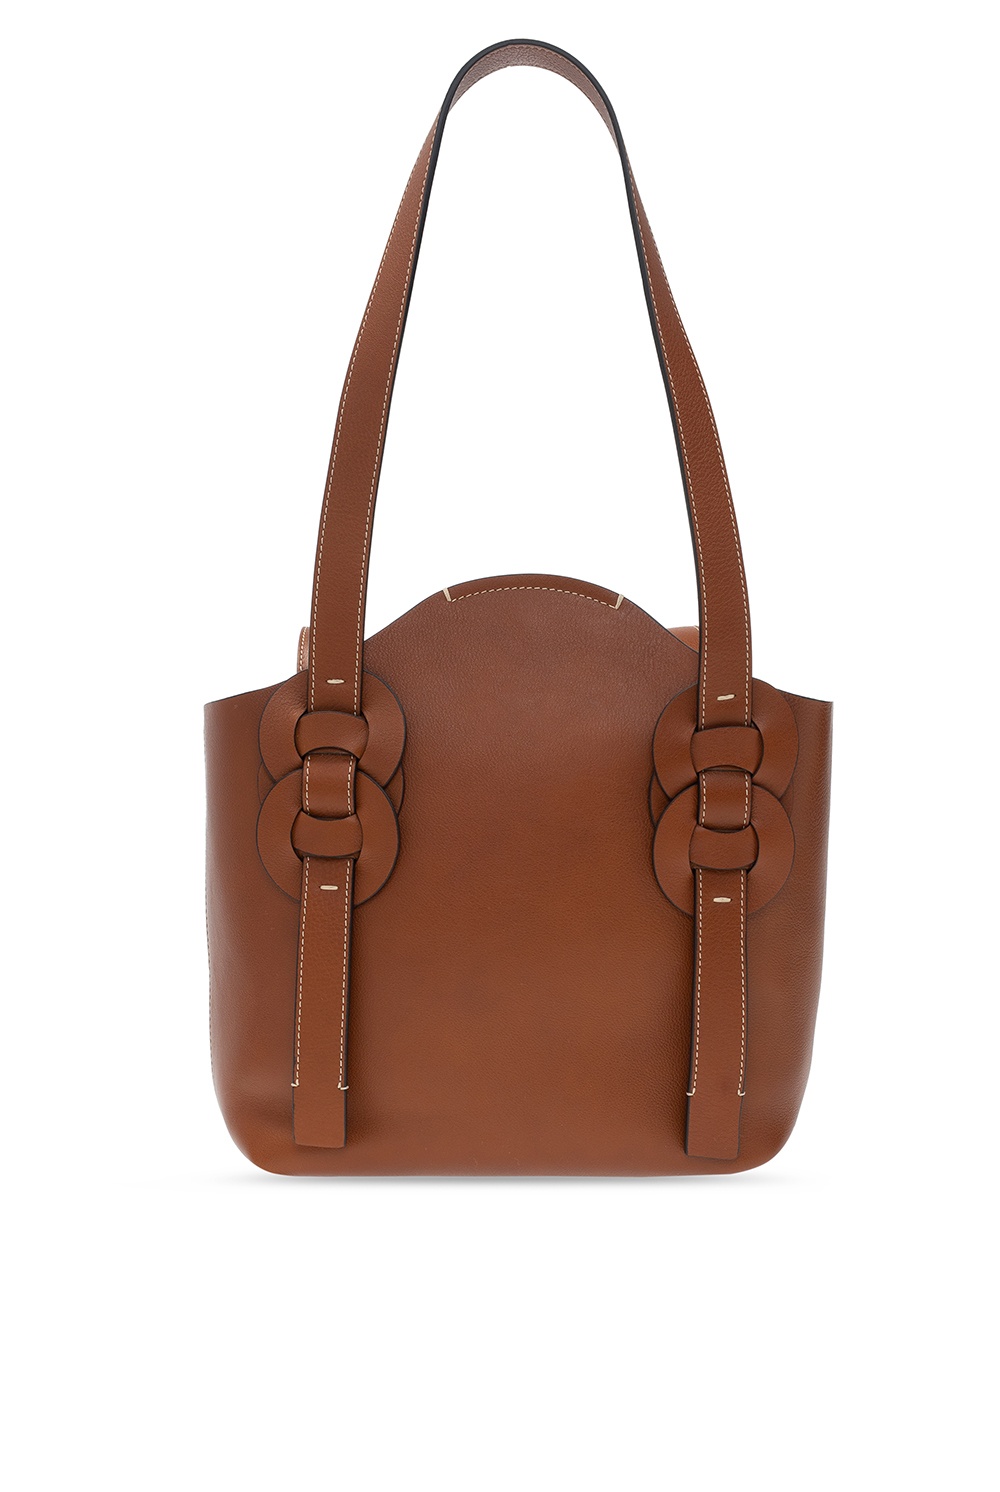 Chloé ‘Darryl’ shopper bag